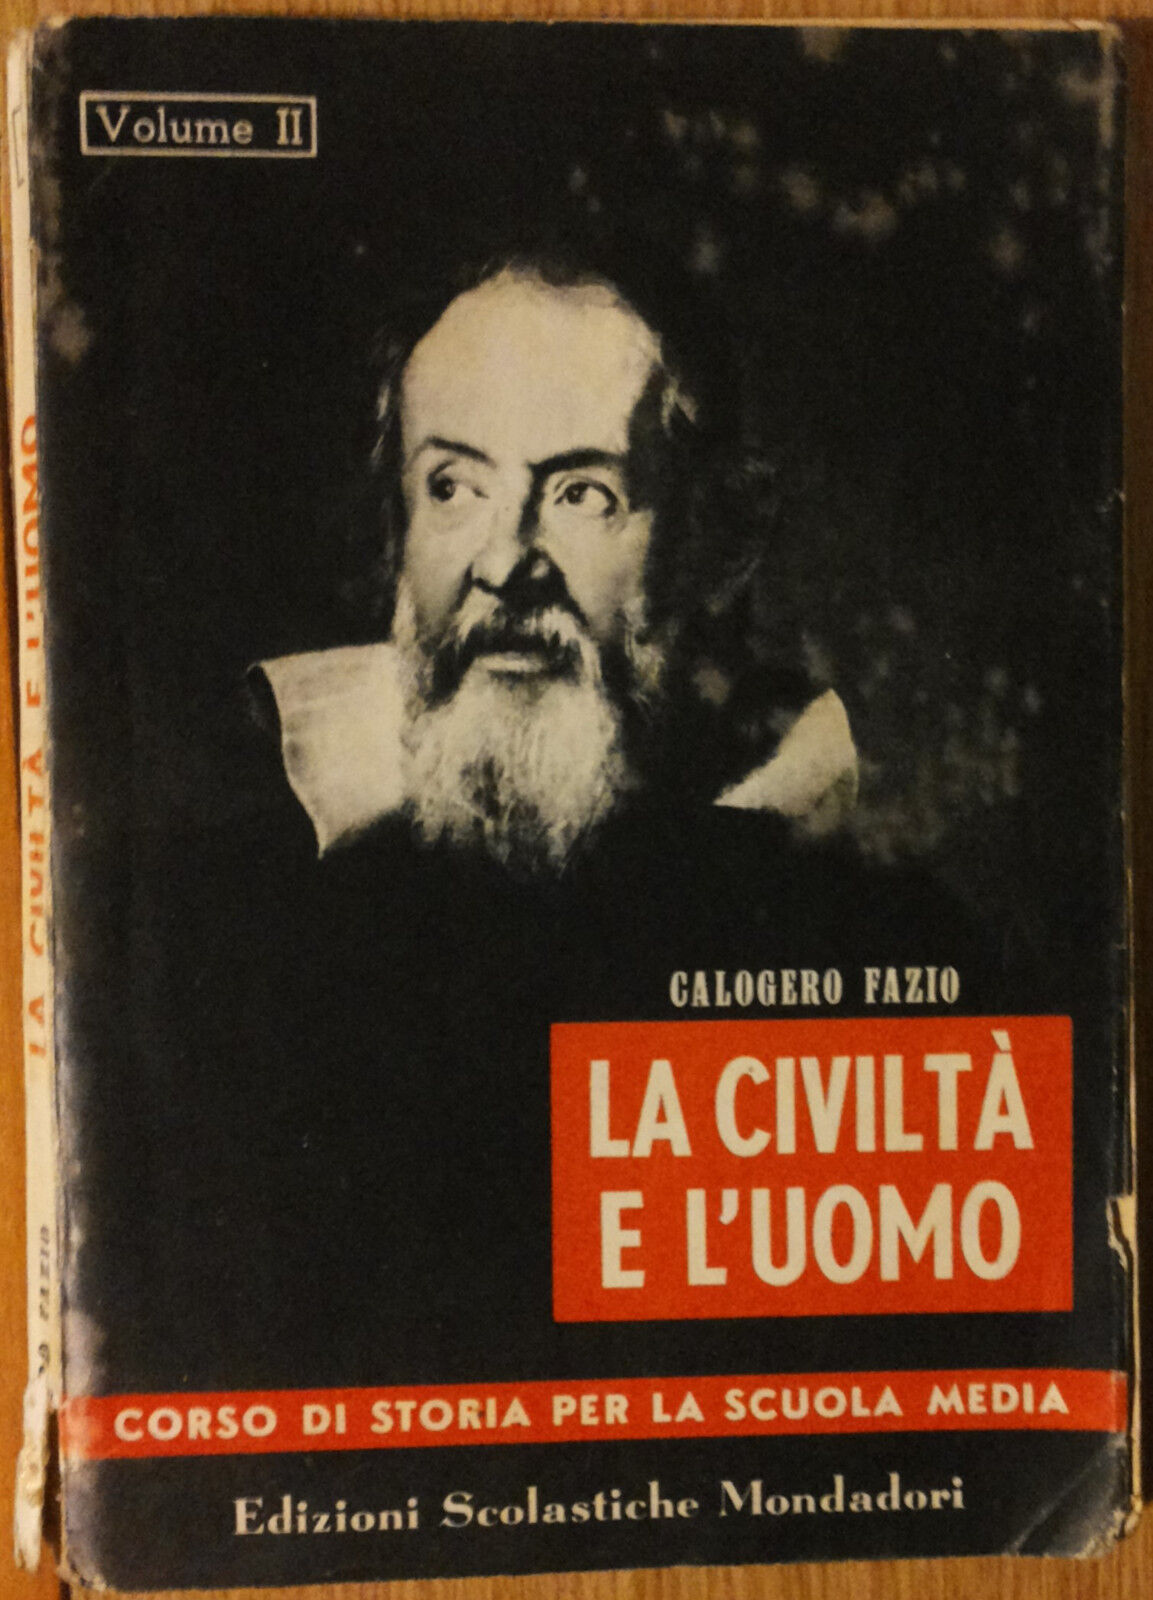 La civilt? e L'uomo Vol. II - Fazio - Edizioni Scolastiche Mondadori,1954 - R